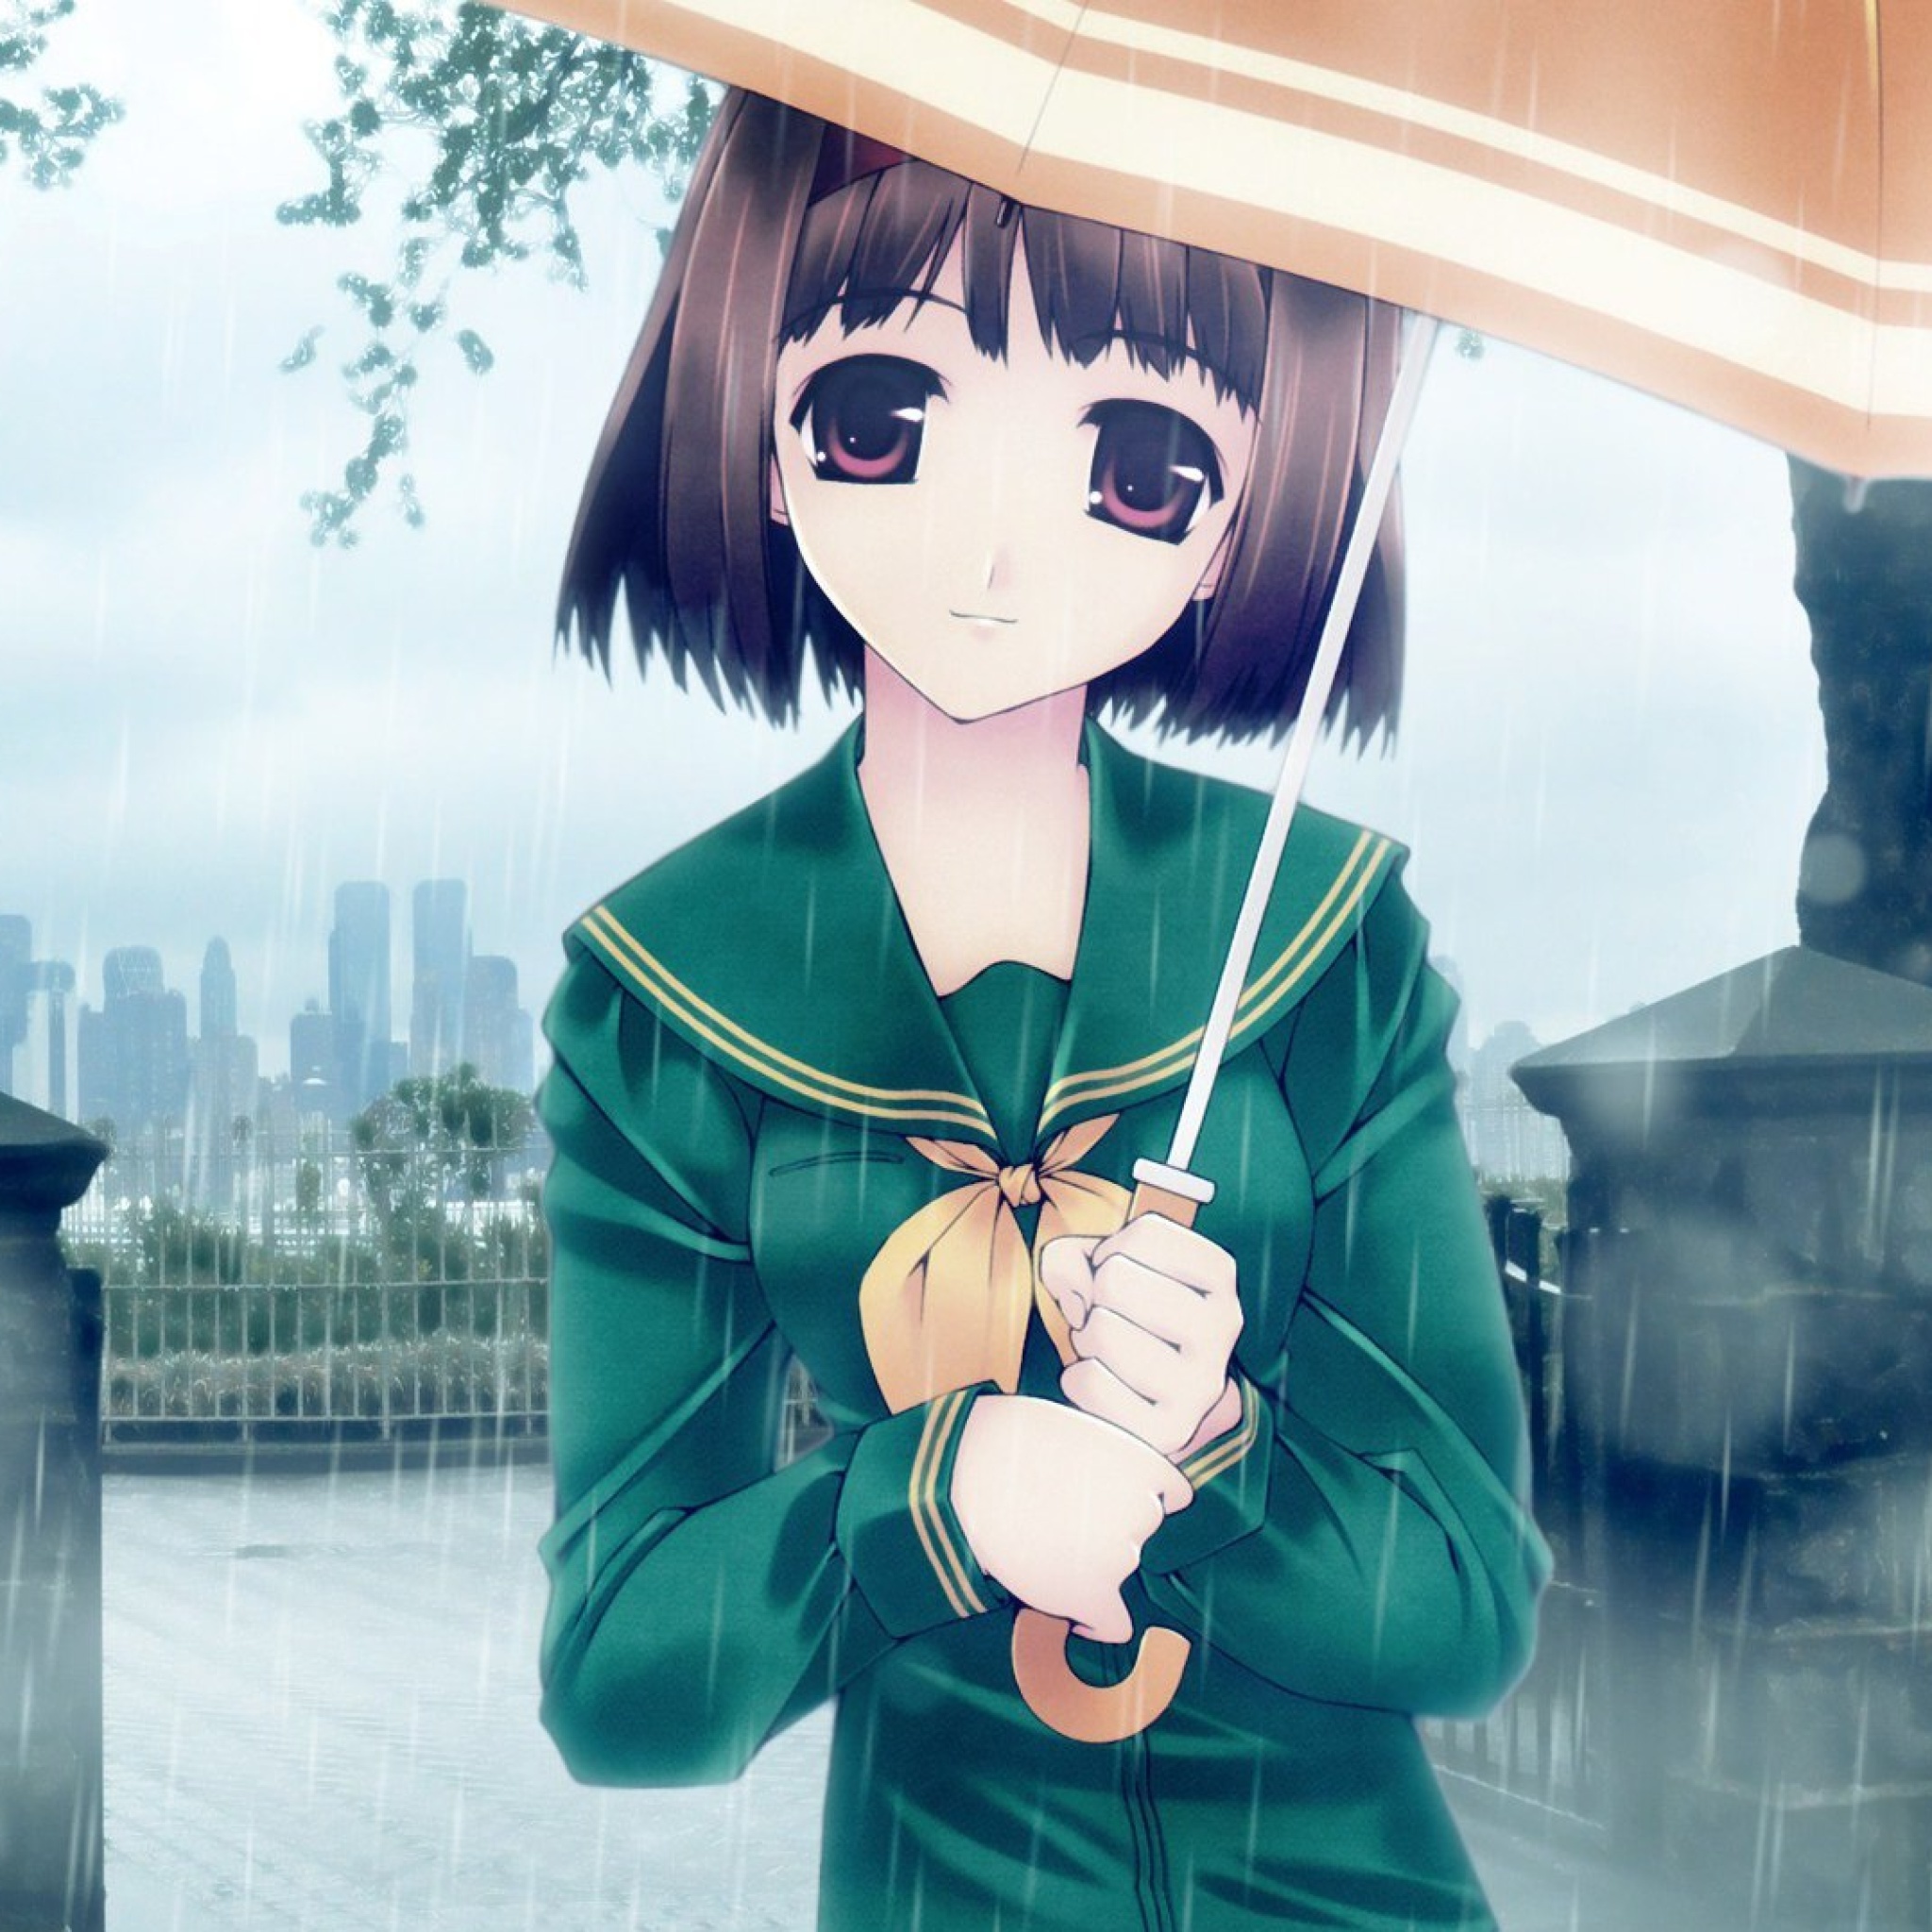 Sfondi Anime girl in rain 2048x2048